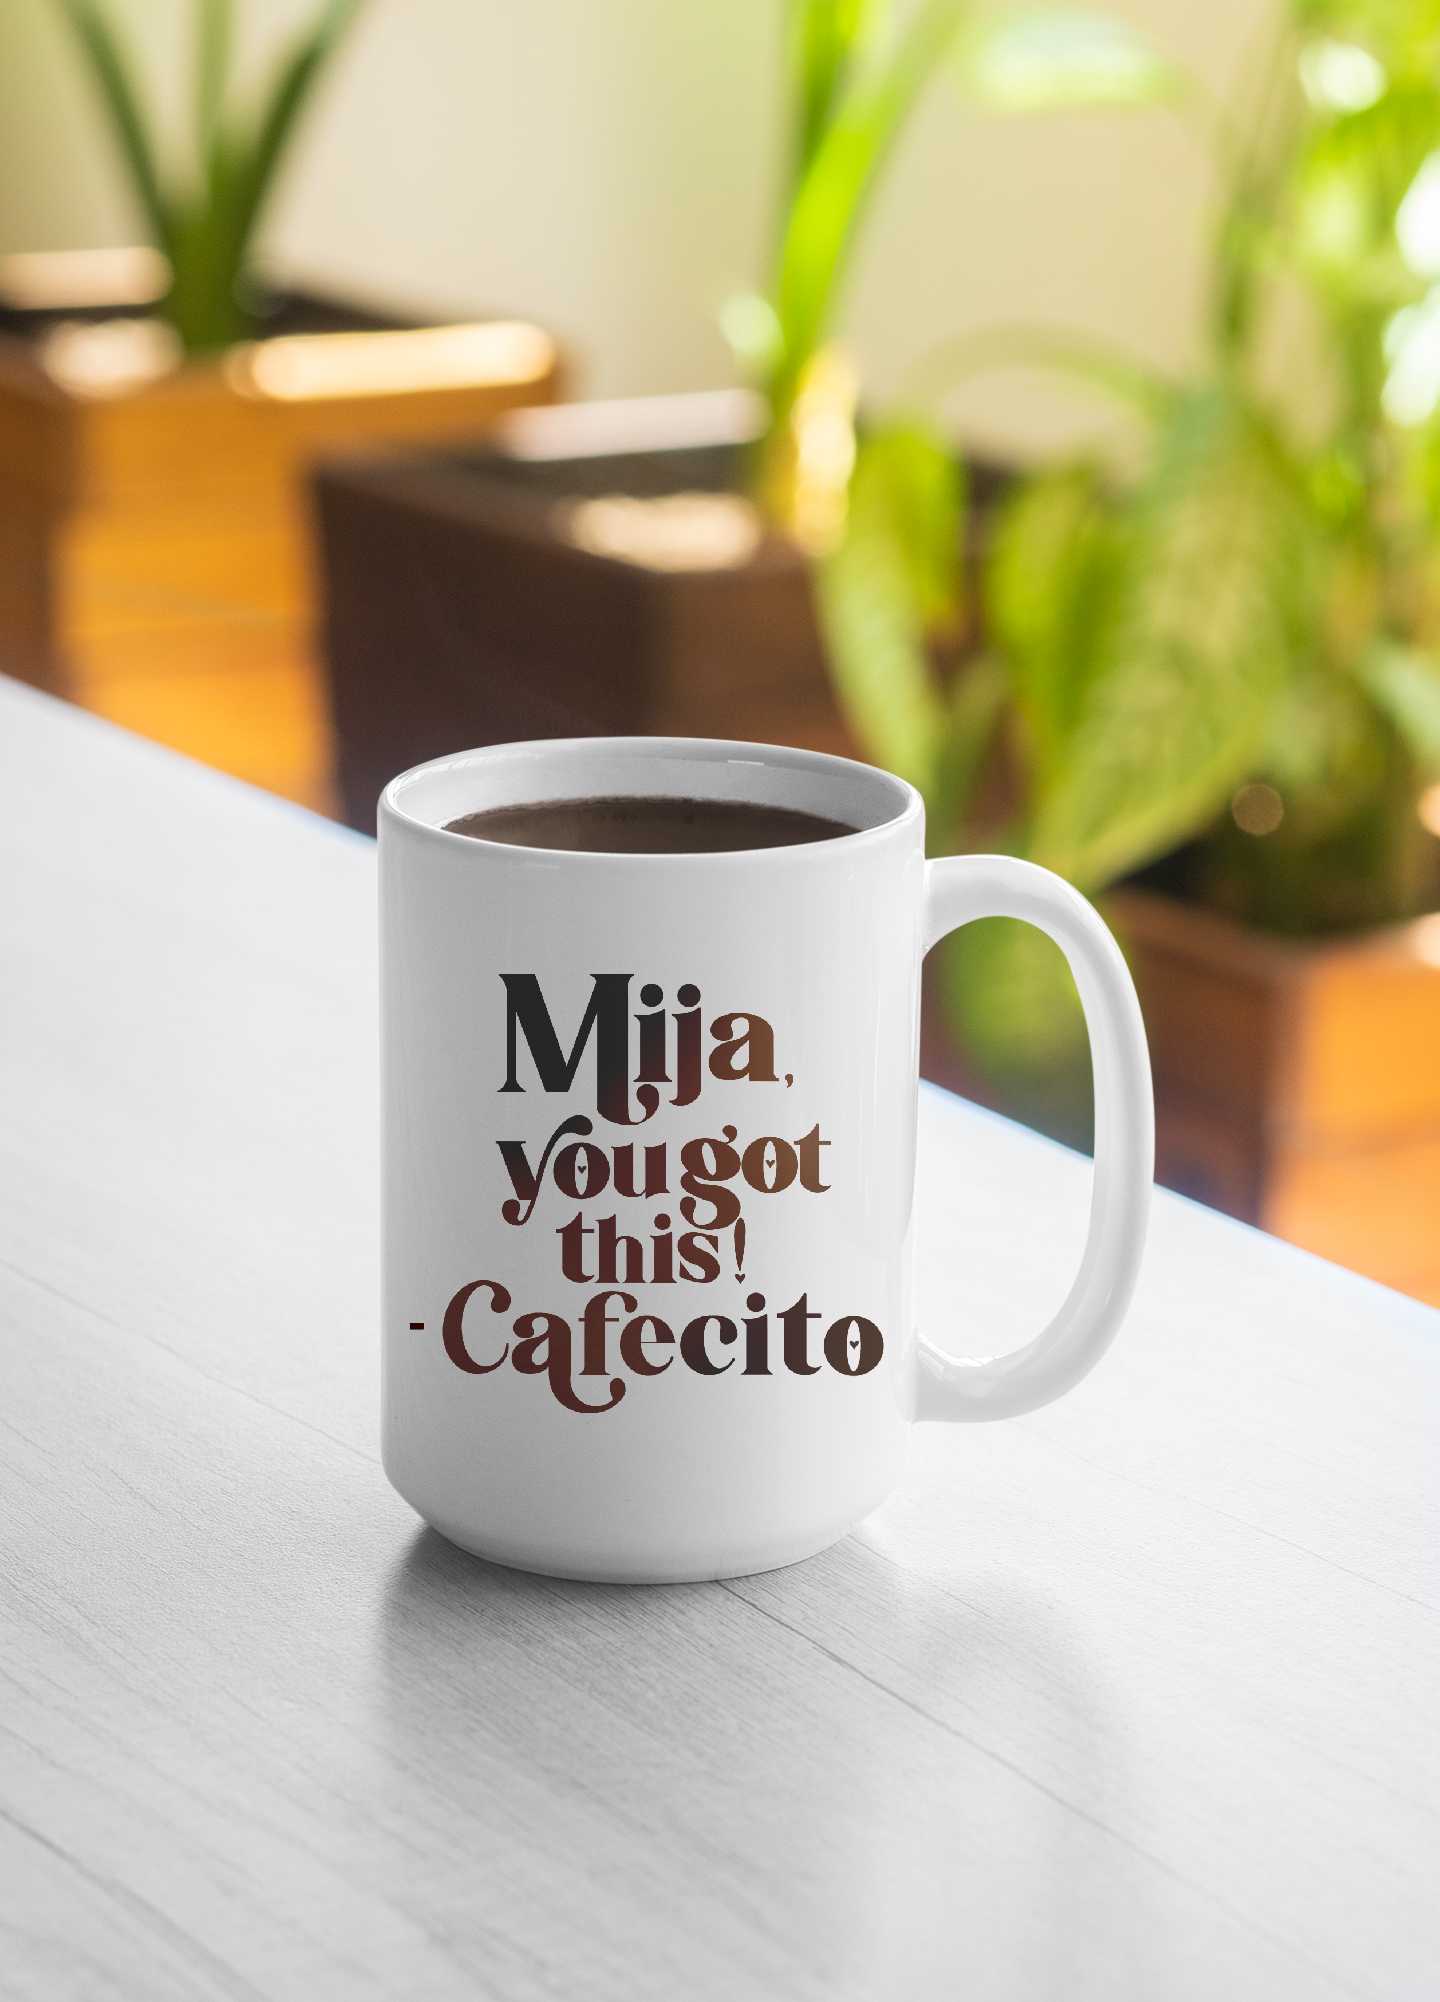 Mija, You Got This! - Cafecito Mug